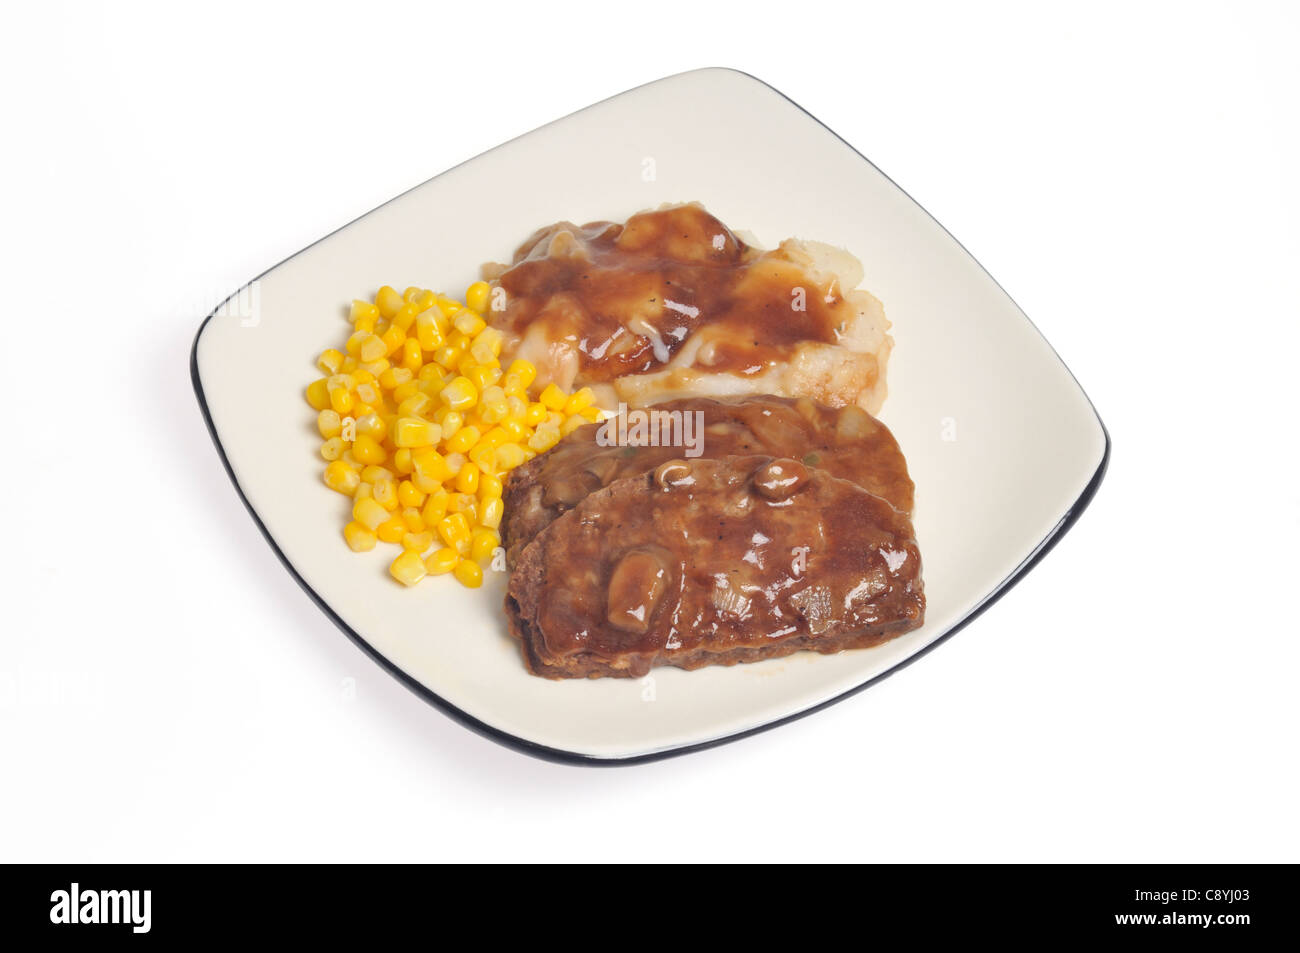 Rebanada de pastel de carne cocida comida con salsa de setas, puré de papas y maíz dulce en placa blanca sobre fondo blanco, recorte. Foto de stock